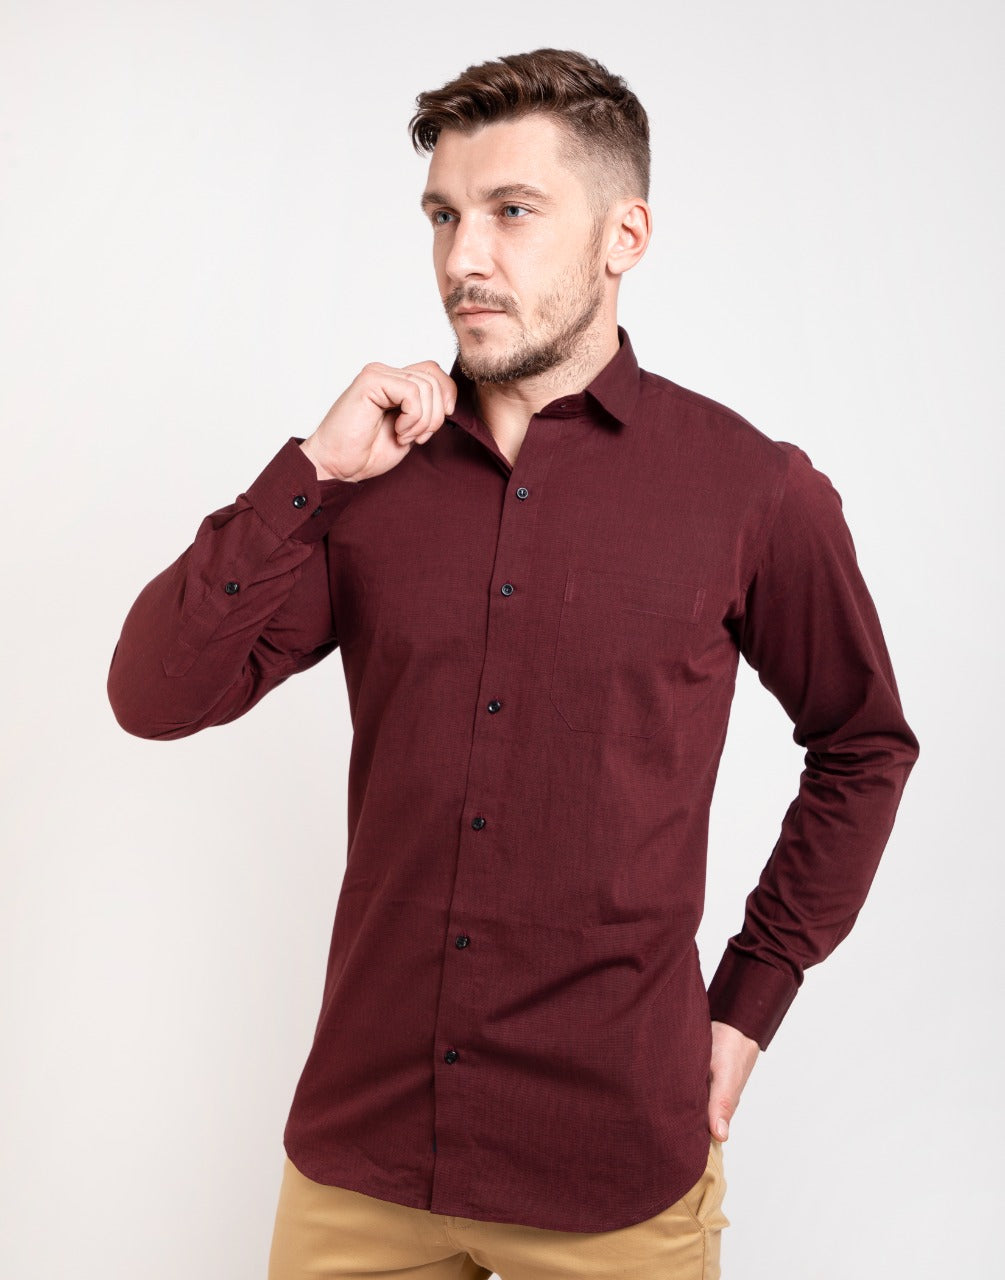 Plain garnet maroon shirt